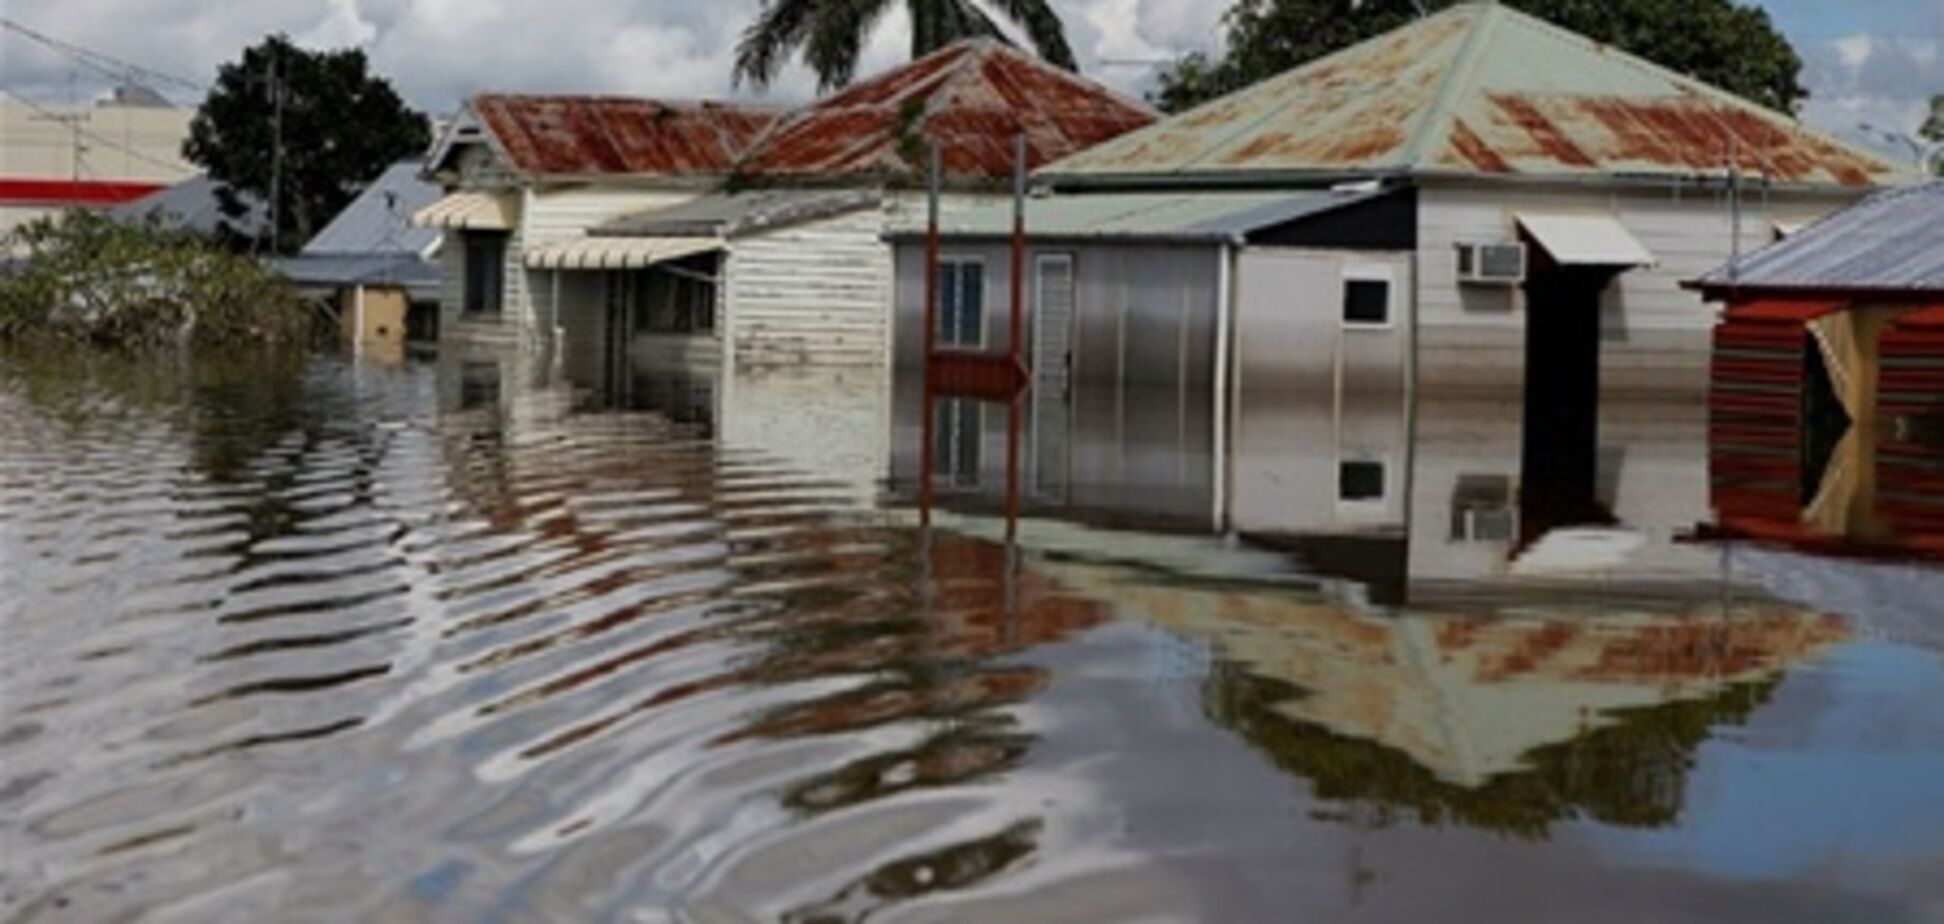 Австралия: наводнение уносит жизни людей. Видео